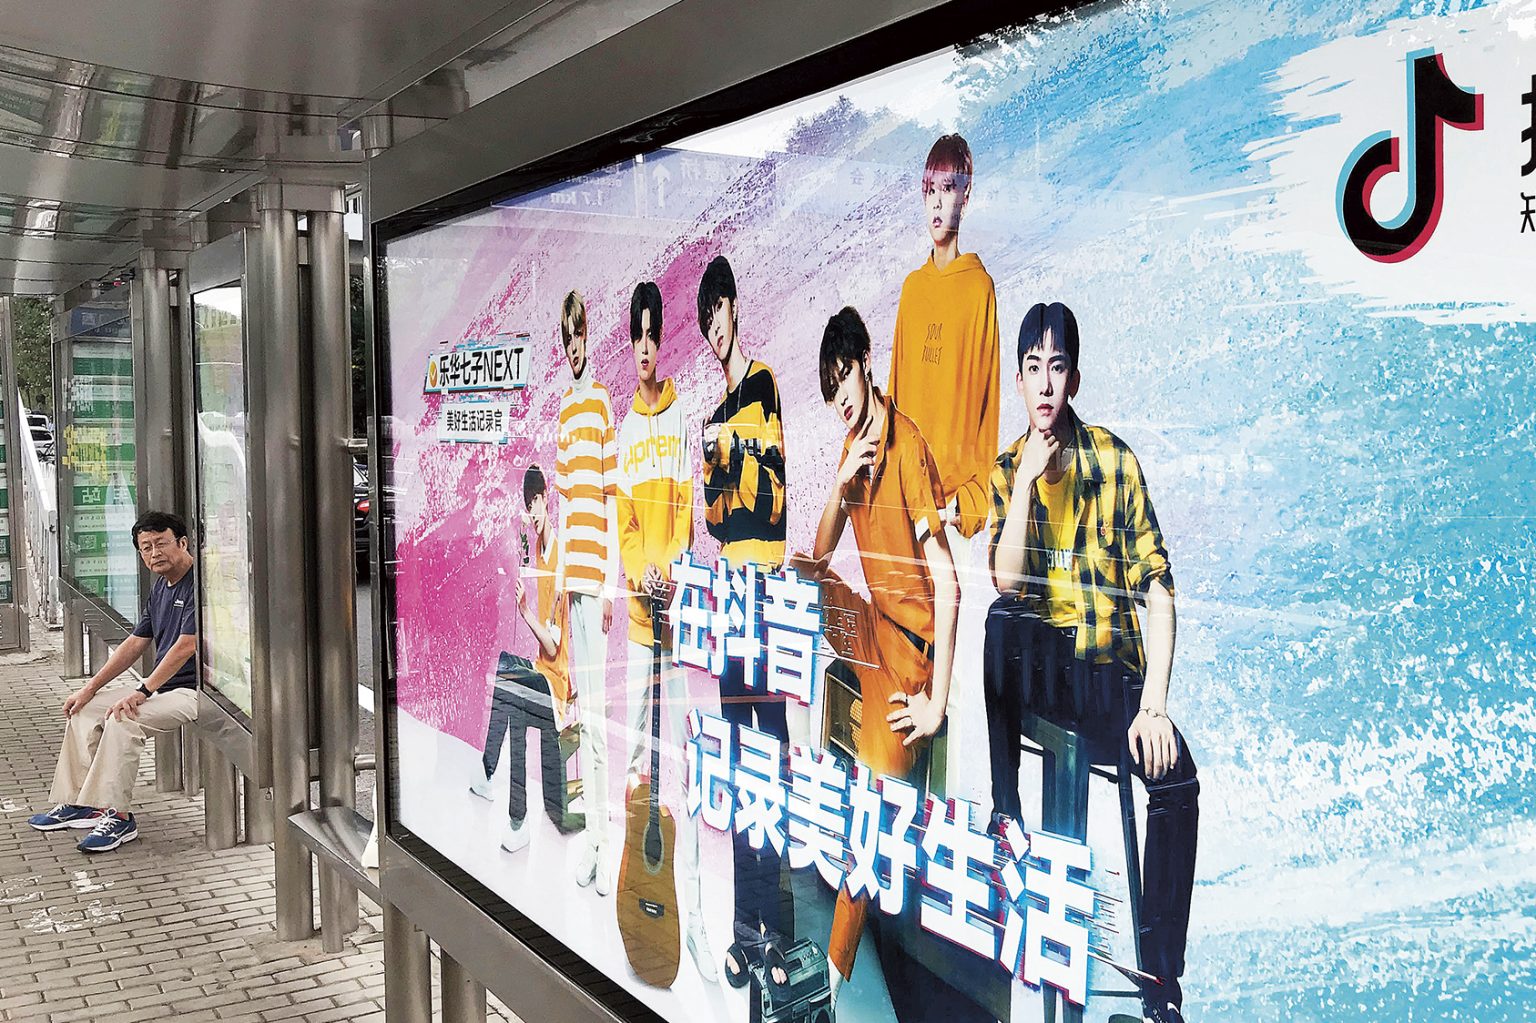 BIllboardtavla vid en kollektivtrafikhållplats i Kina. På tavlan syns en reklam för TikTok